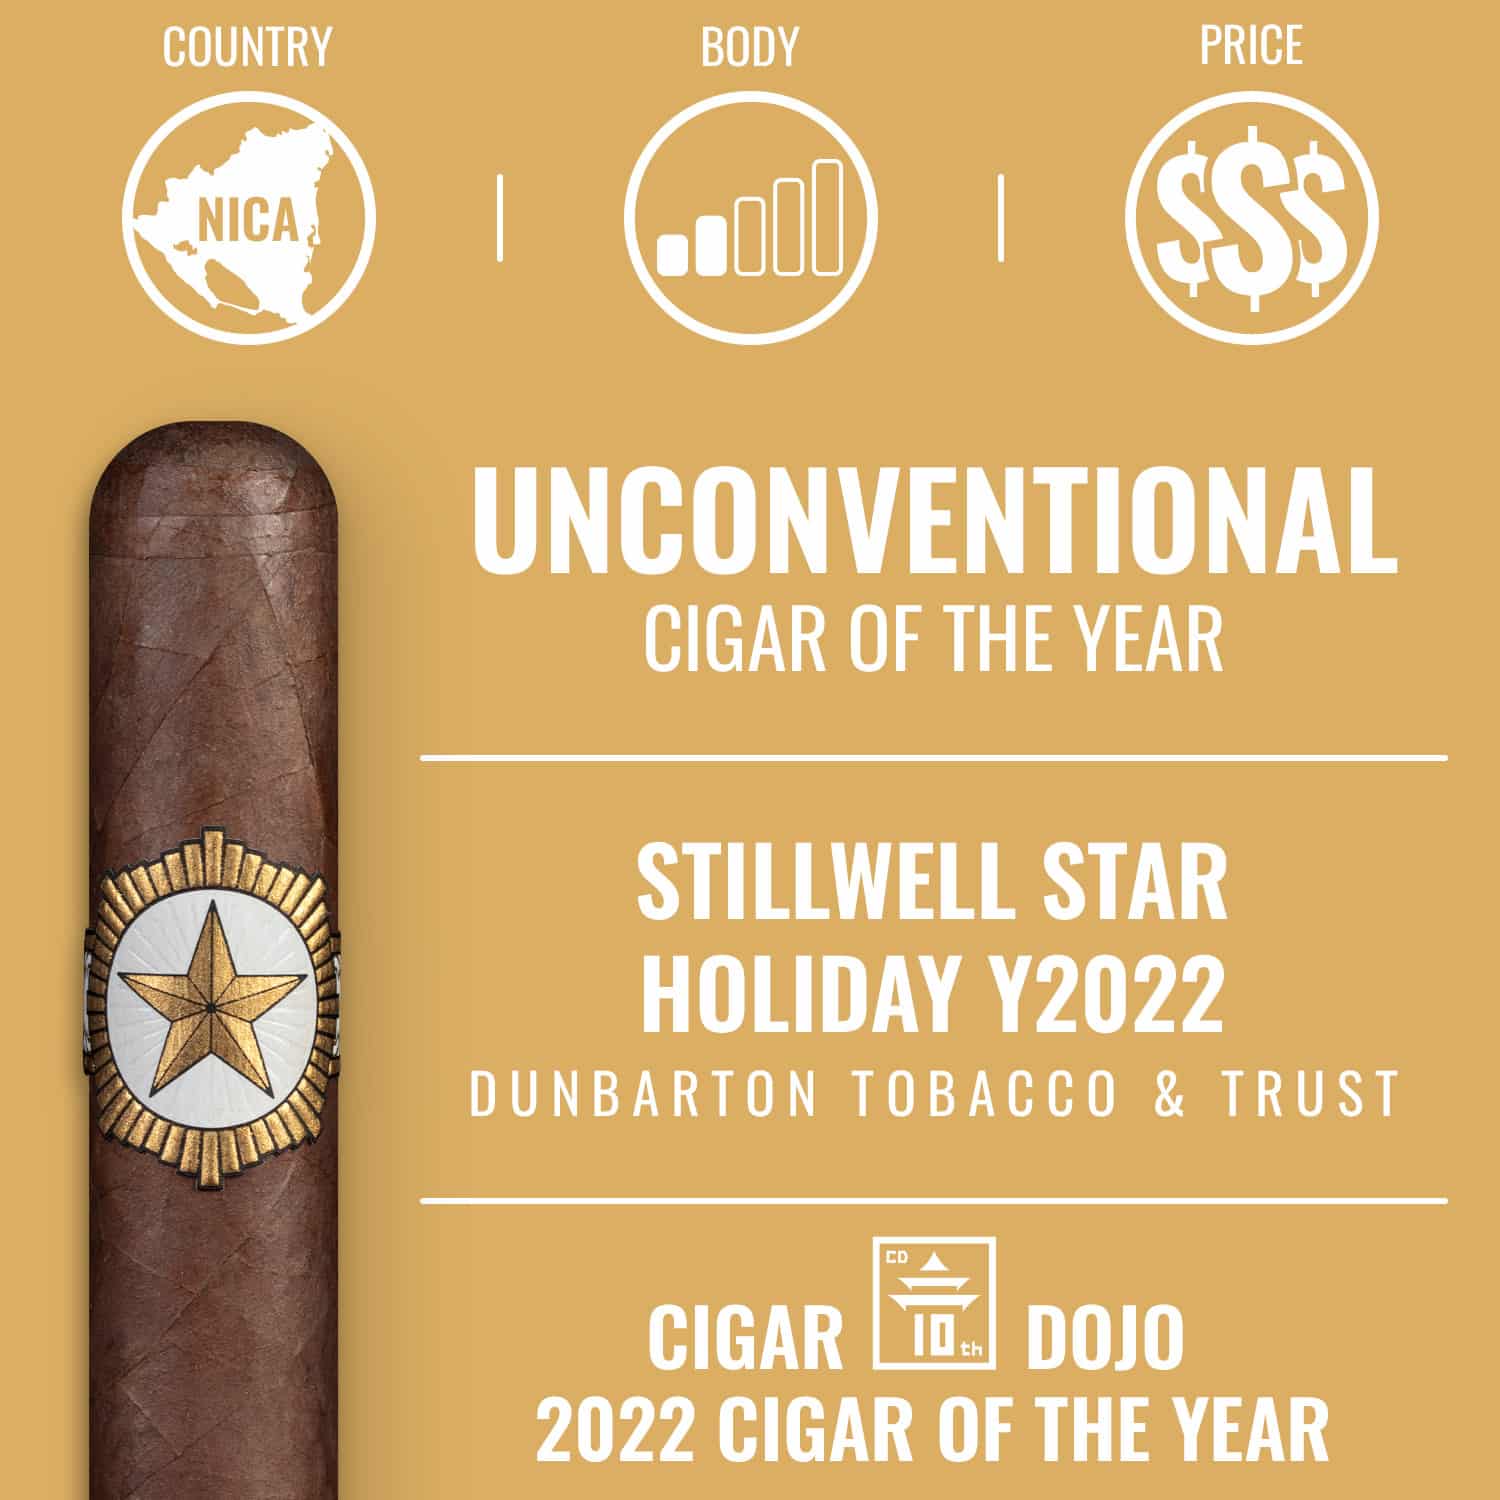 Dunbarton StillWell Star Holiday Y2022 Unconventional Cigar of the Year 2022